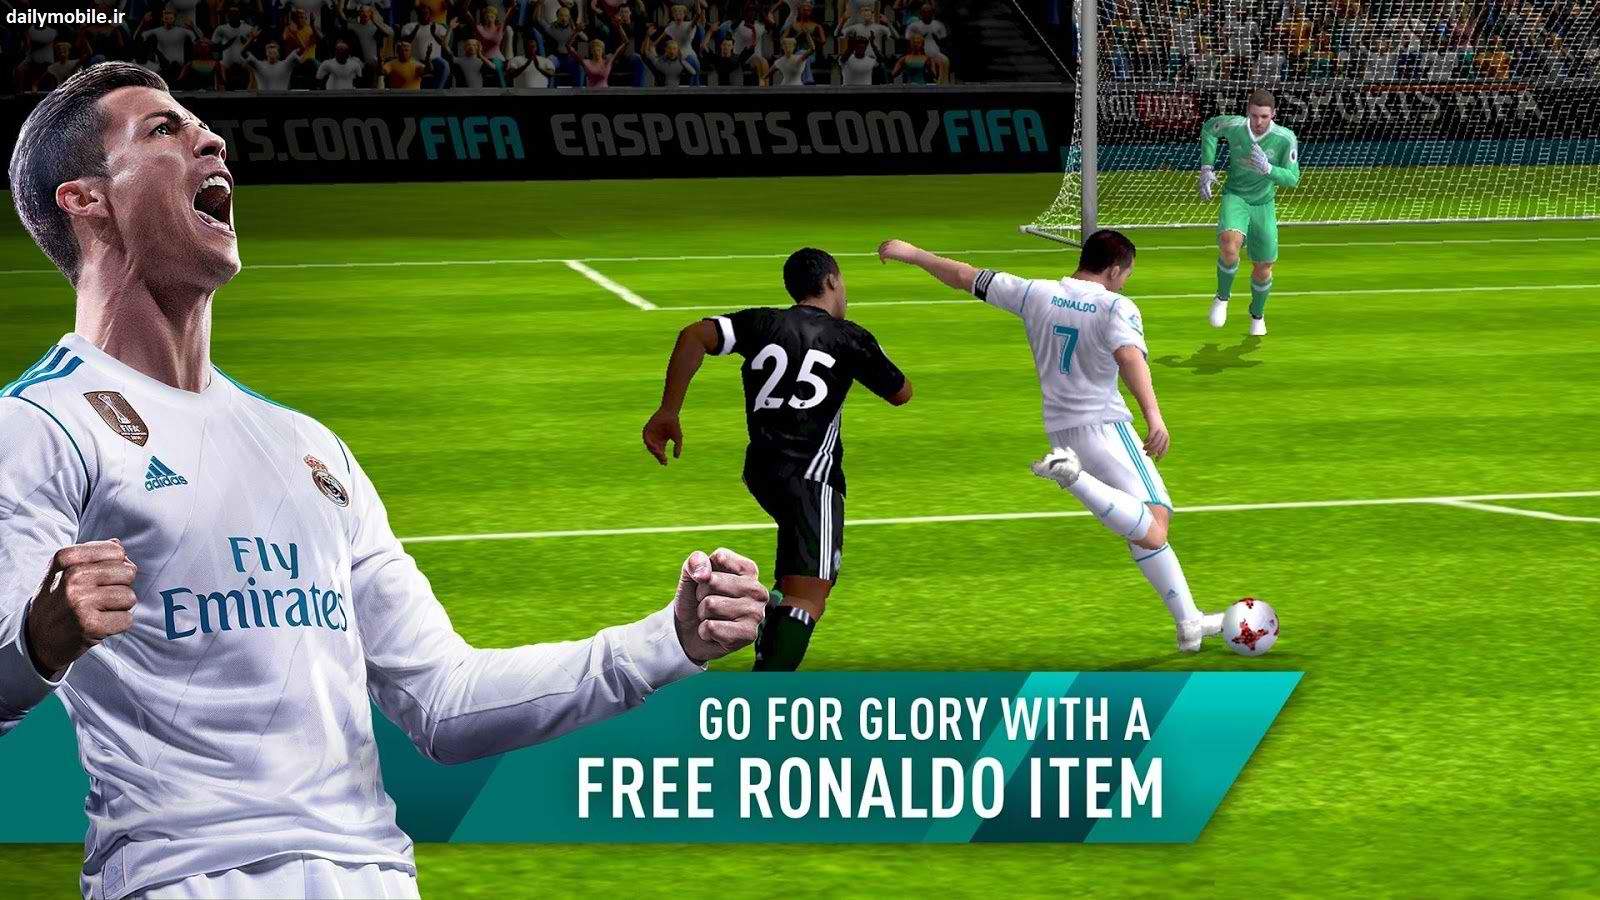 بازی FIFA Mobile 19,اخبار دیجیتال,خبرهای دیجیتال,بازی 